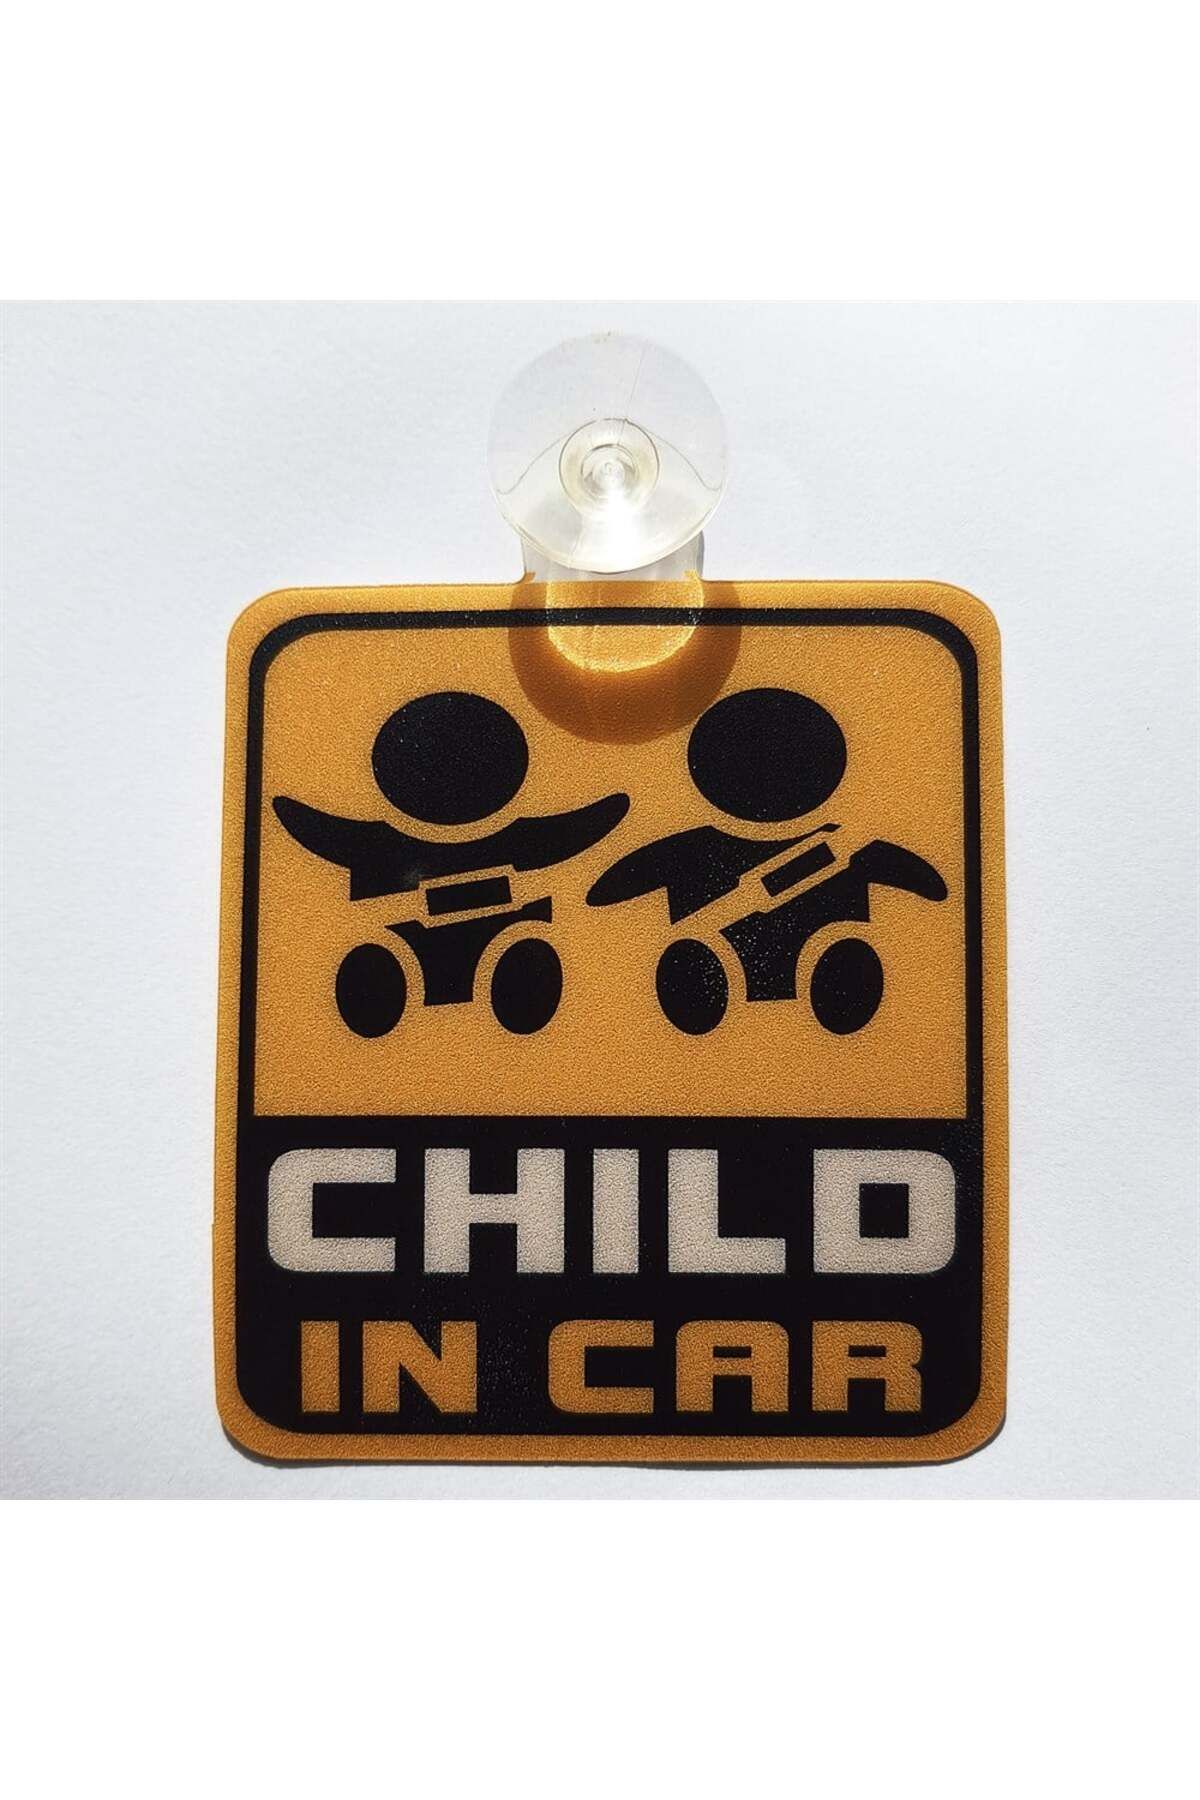 Dreamcar Child In Car Plastik Vantuzlu Oto Cam Uyarı Levhası